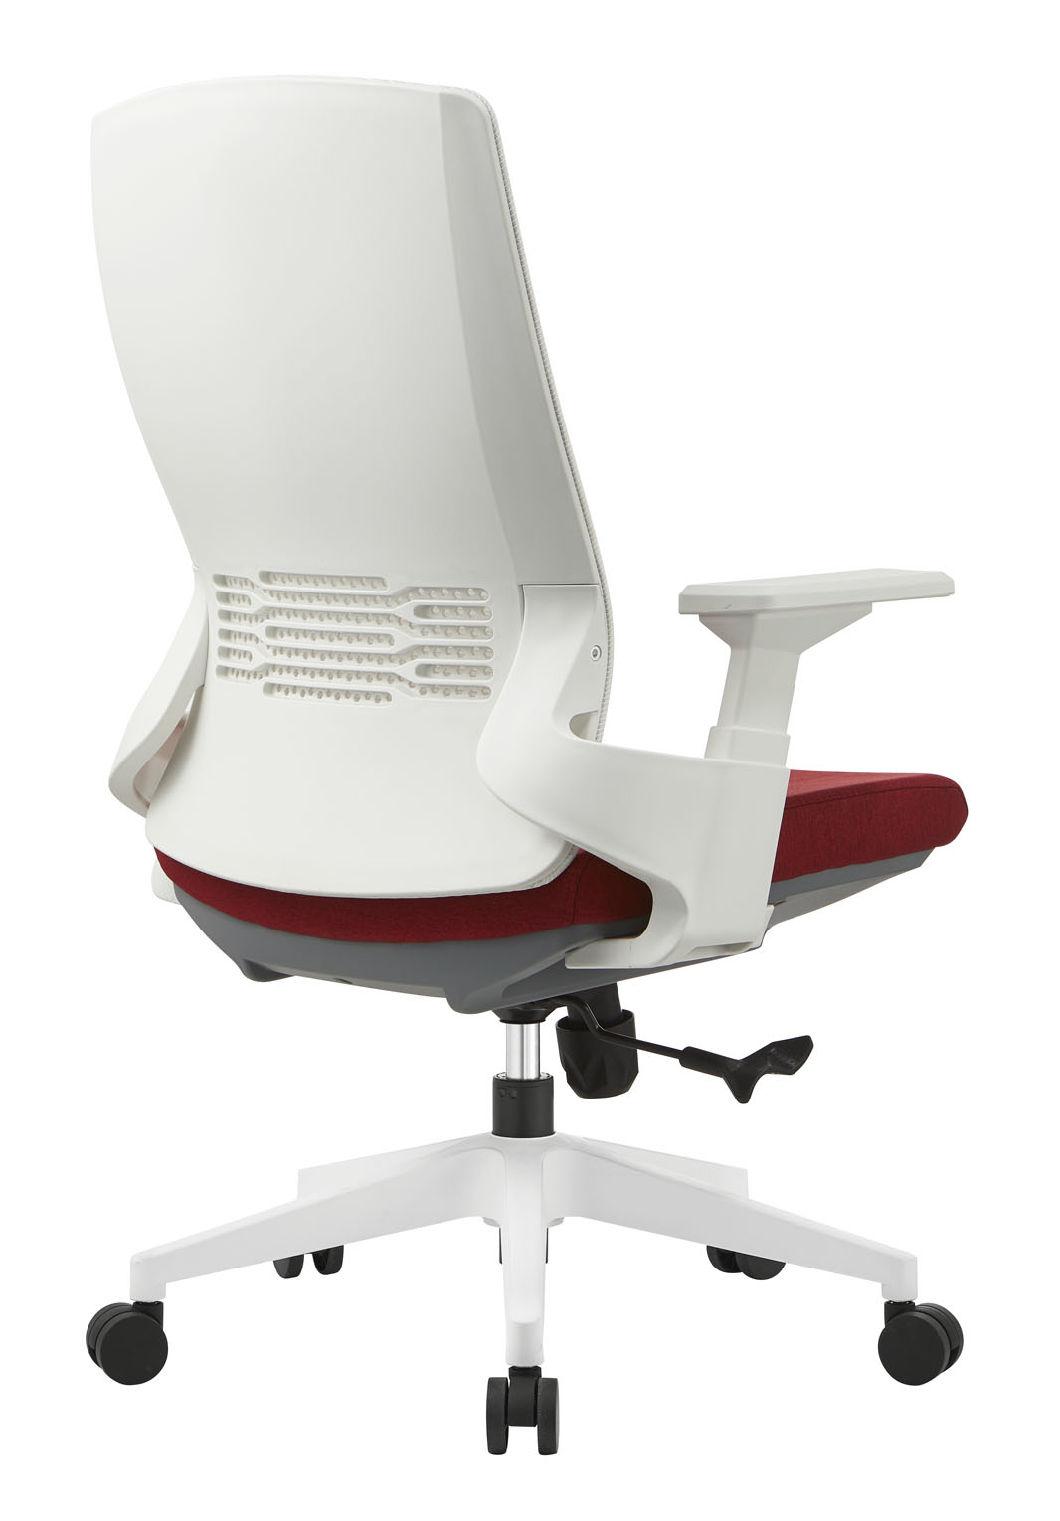 White Frame Bionic Swivel Chair Mesh Chair